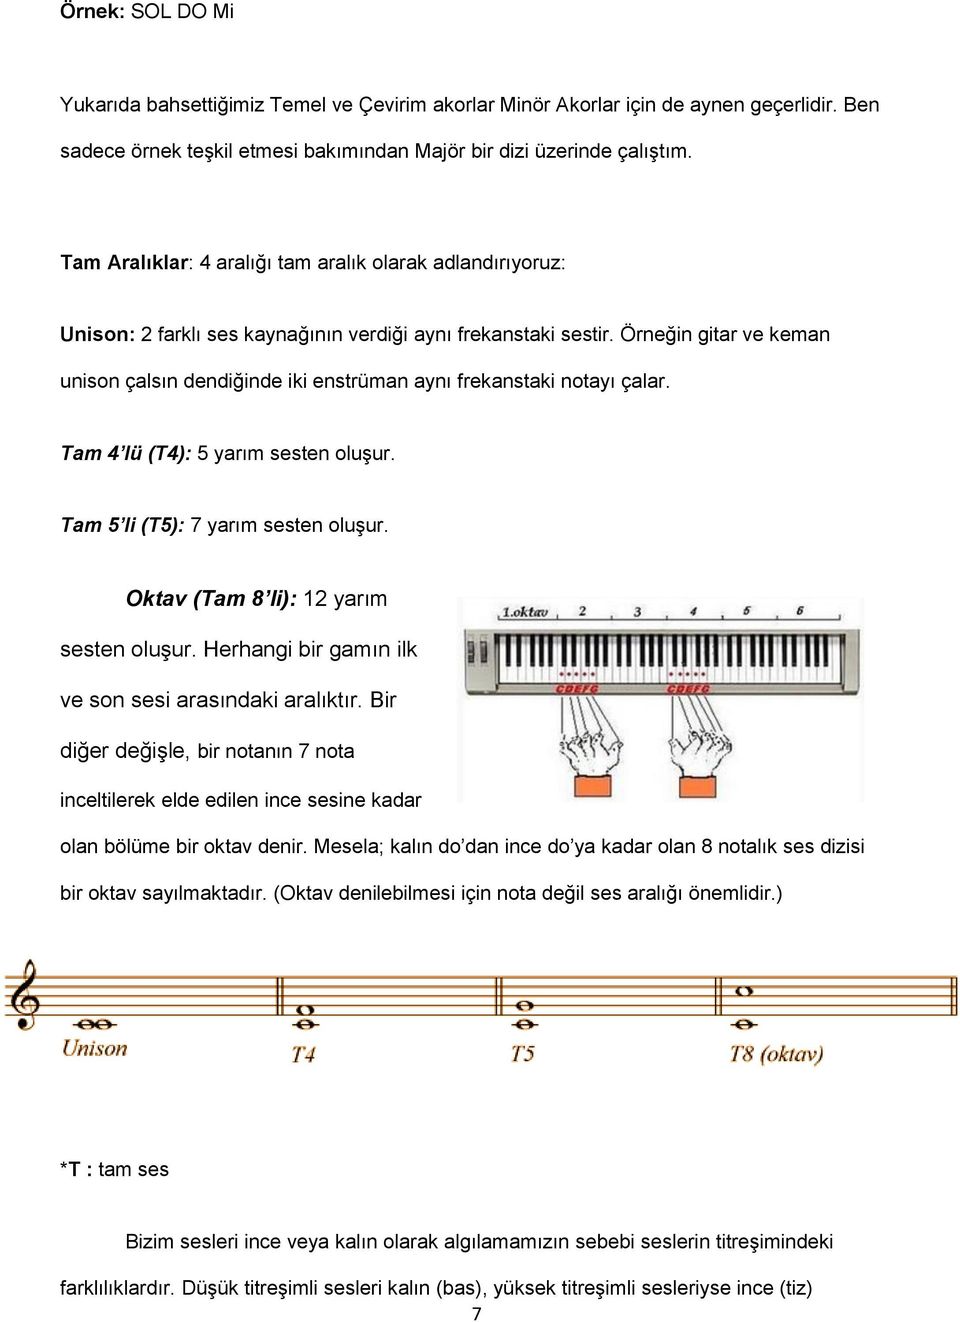 Örneğin gitar ve keman unison çalsın dendiğinde iki enstrüman aynı frekanstaki notayı çalar. Tam 4 lü (T4): 5 yarım sesten oluşur. Tam 5 li (T5): 7 yarım sesten oluşur.